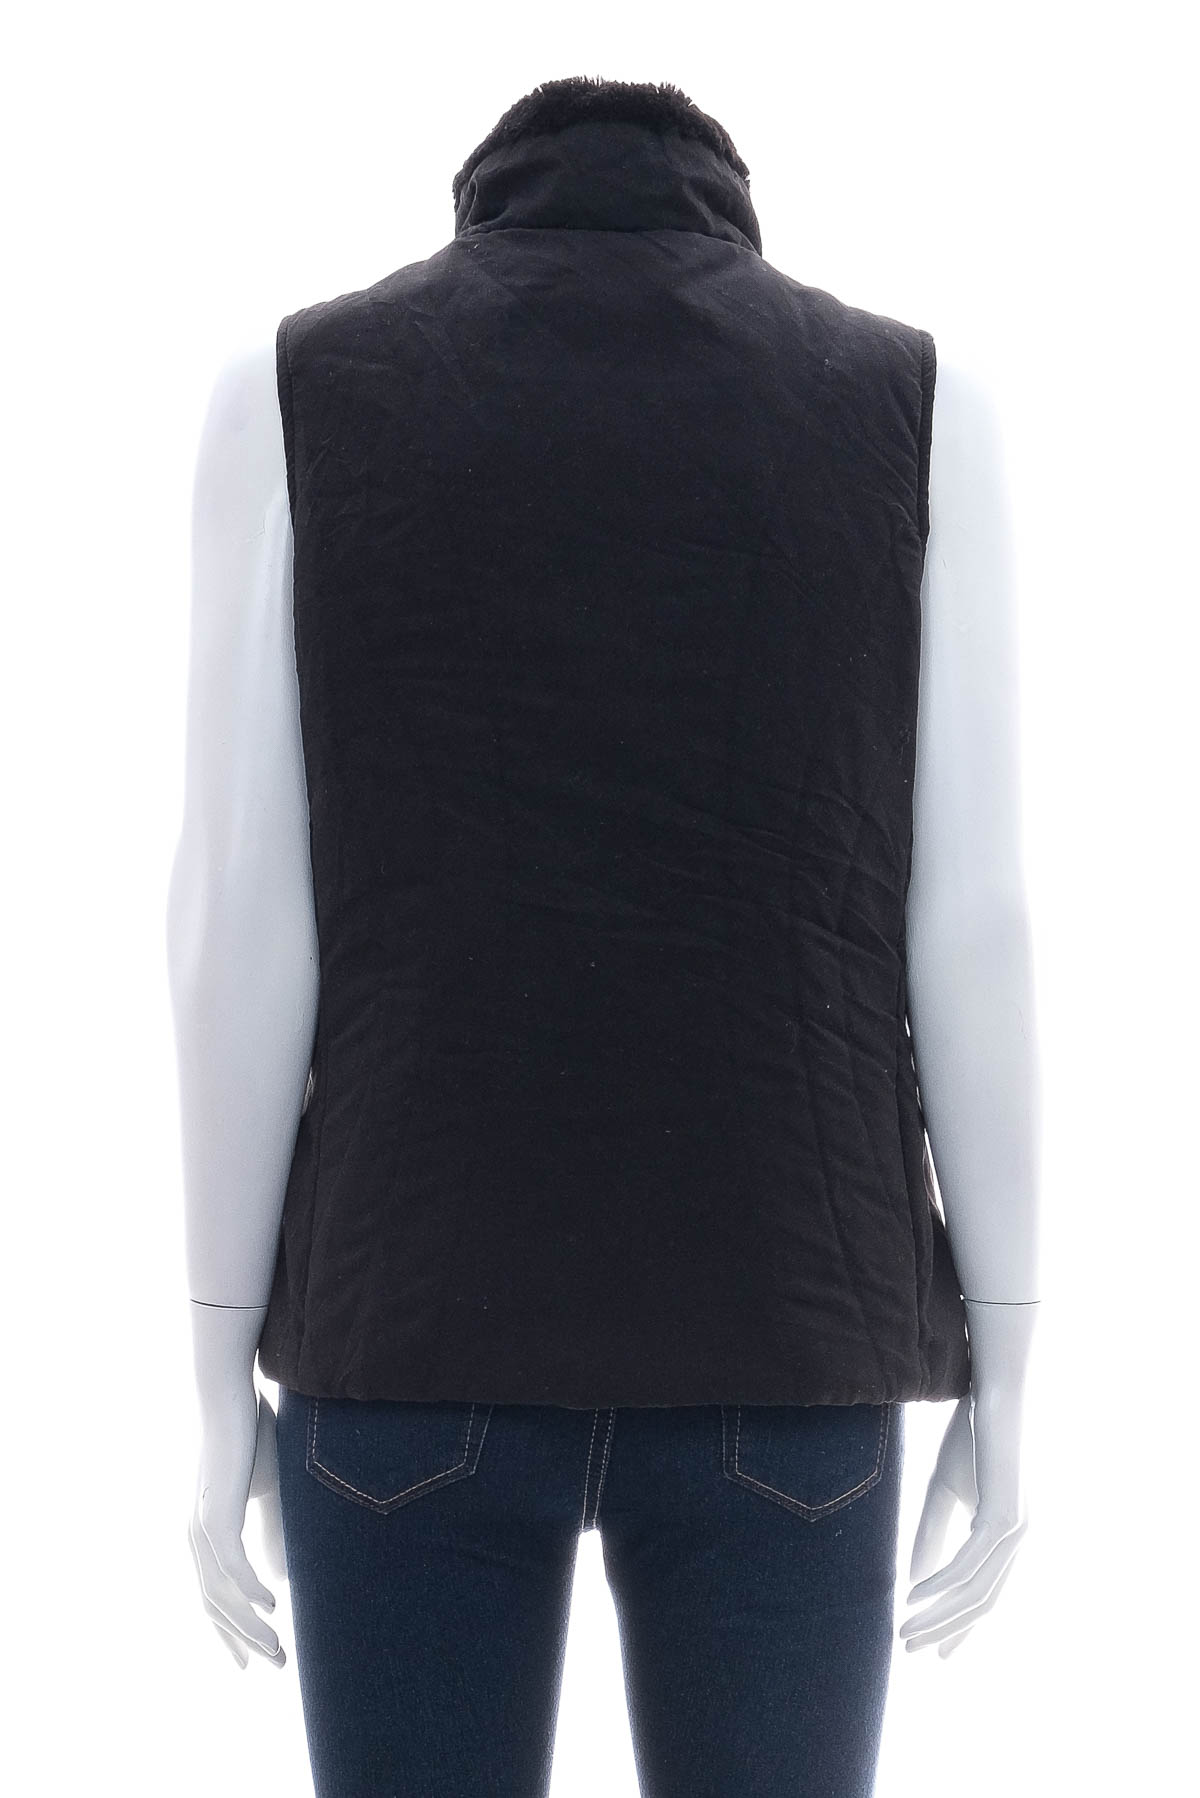 Women's vest - JANE ASHLEY - 1